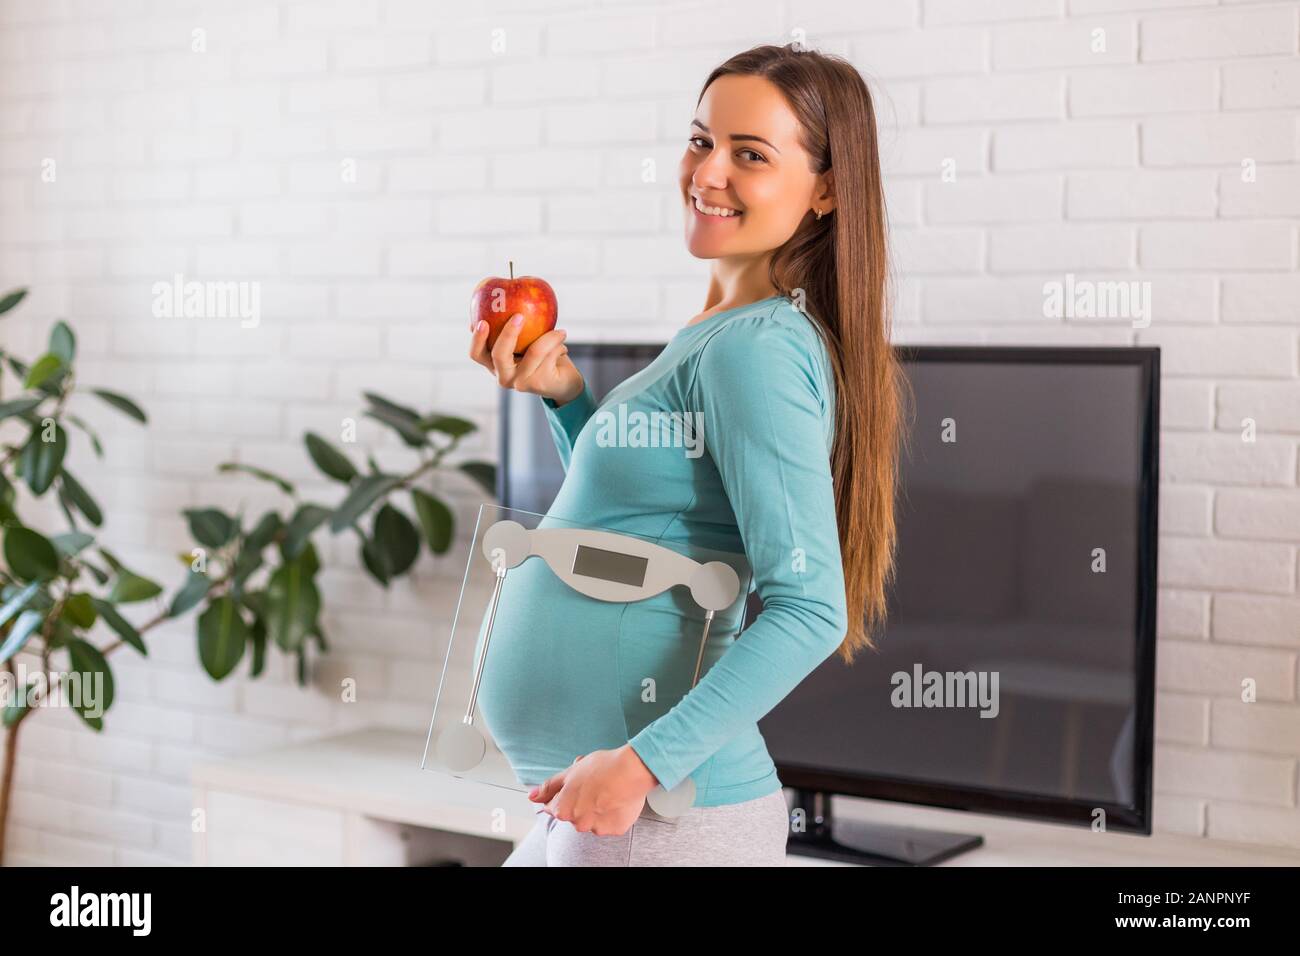 Frau mit Apfel, Maßstab und zeigen, dass Sie gesund essen und trainieren, während sie schwanger ist. Stockfoto